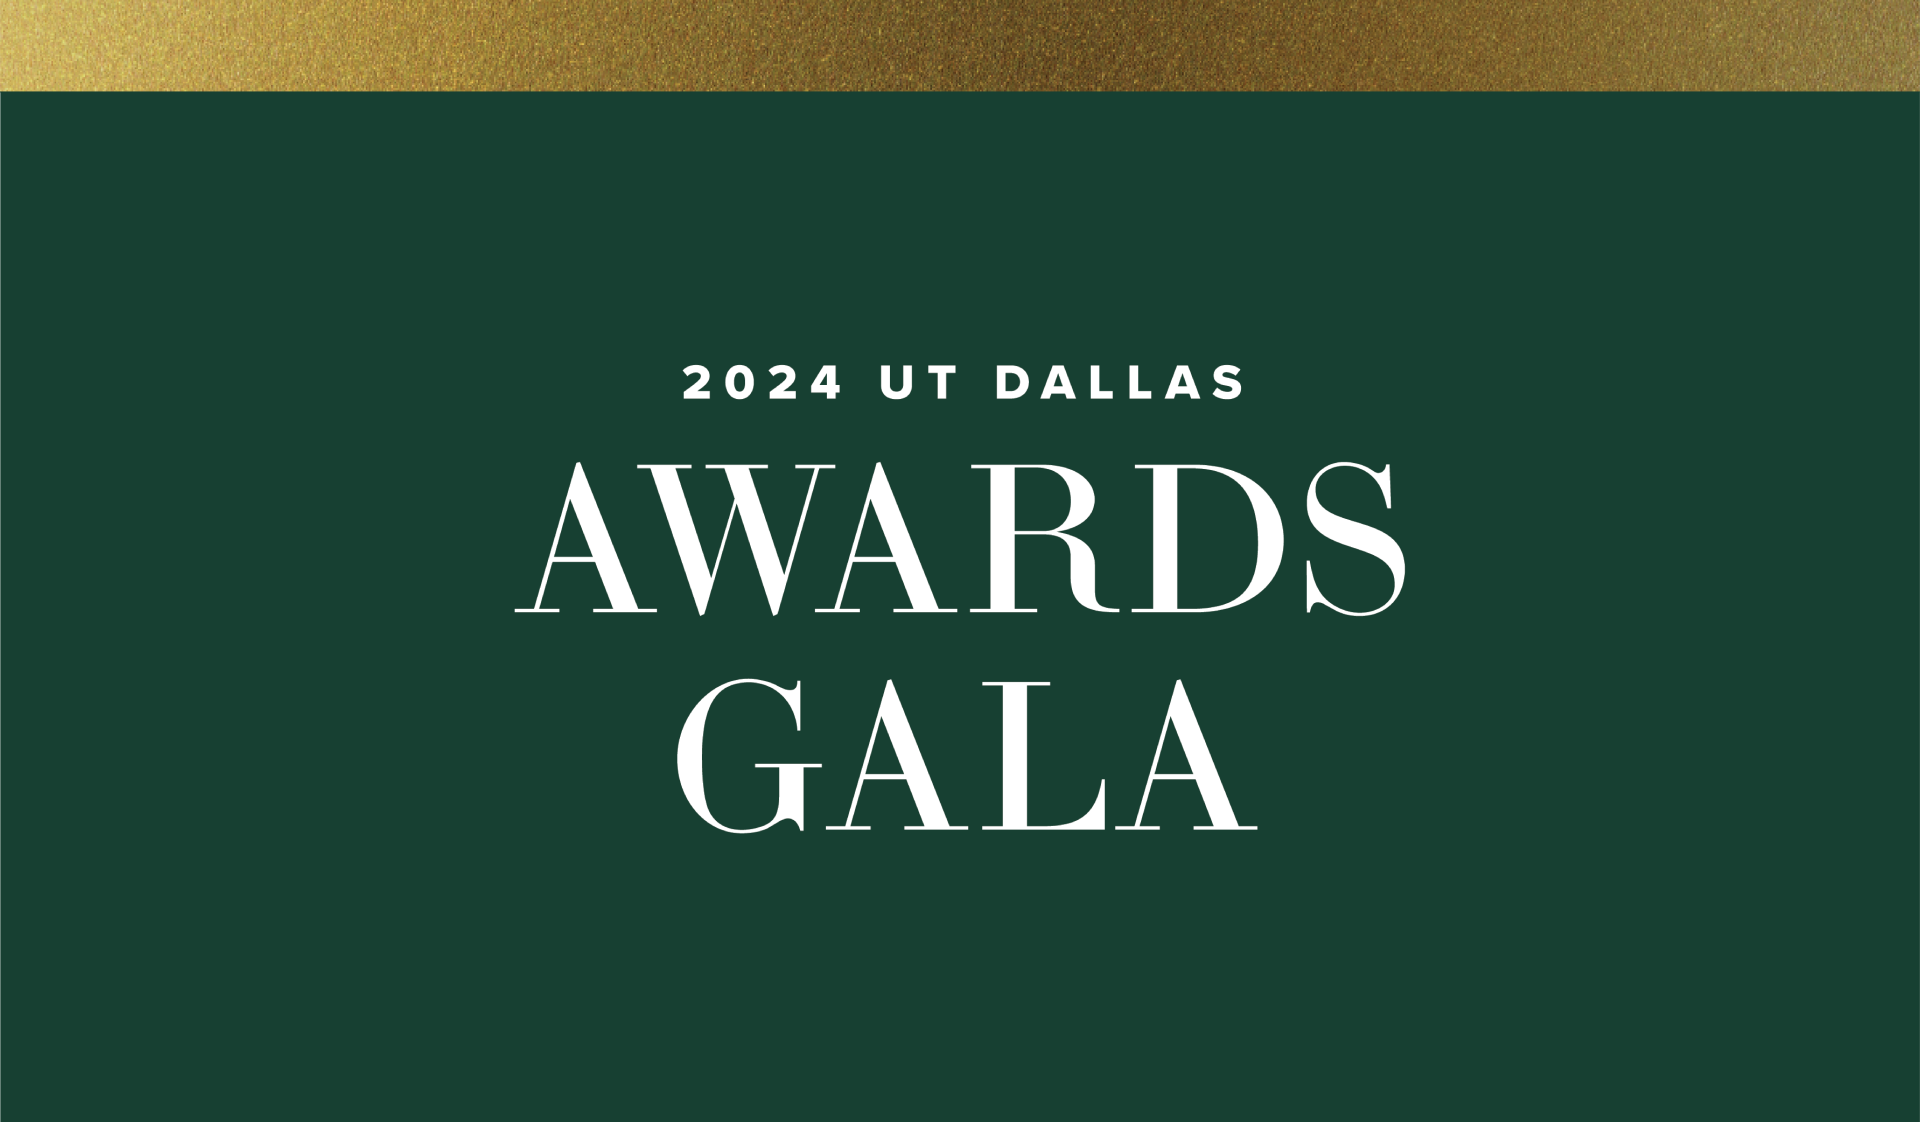 20th UT Dallas Awards Gala to Celebrate Alumni, Supporters